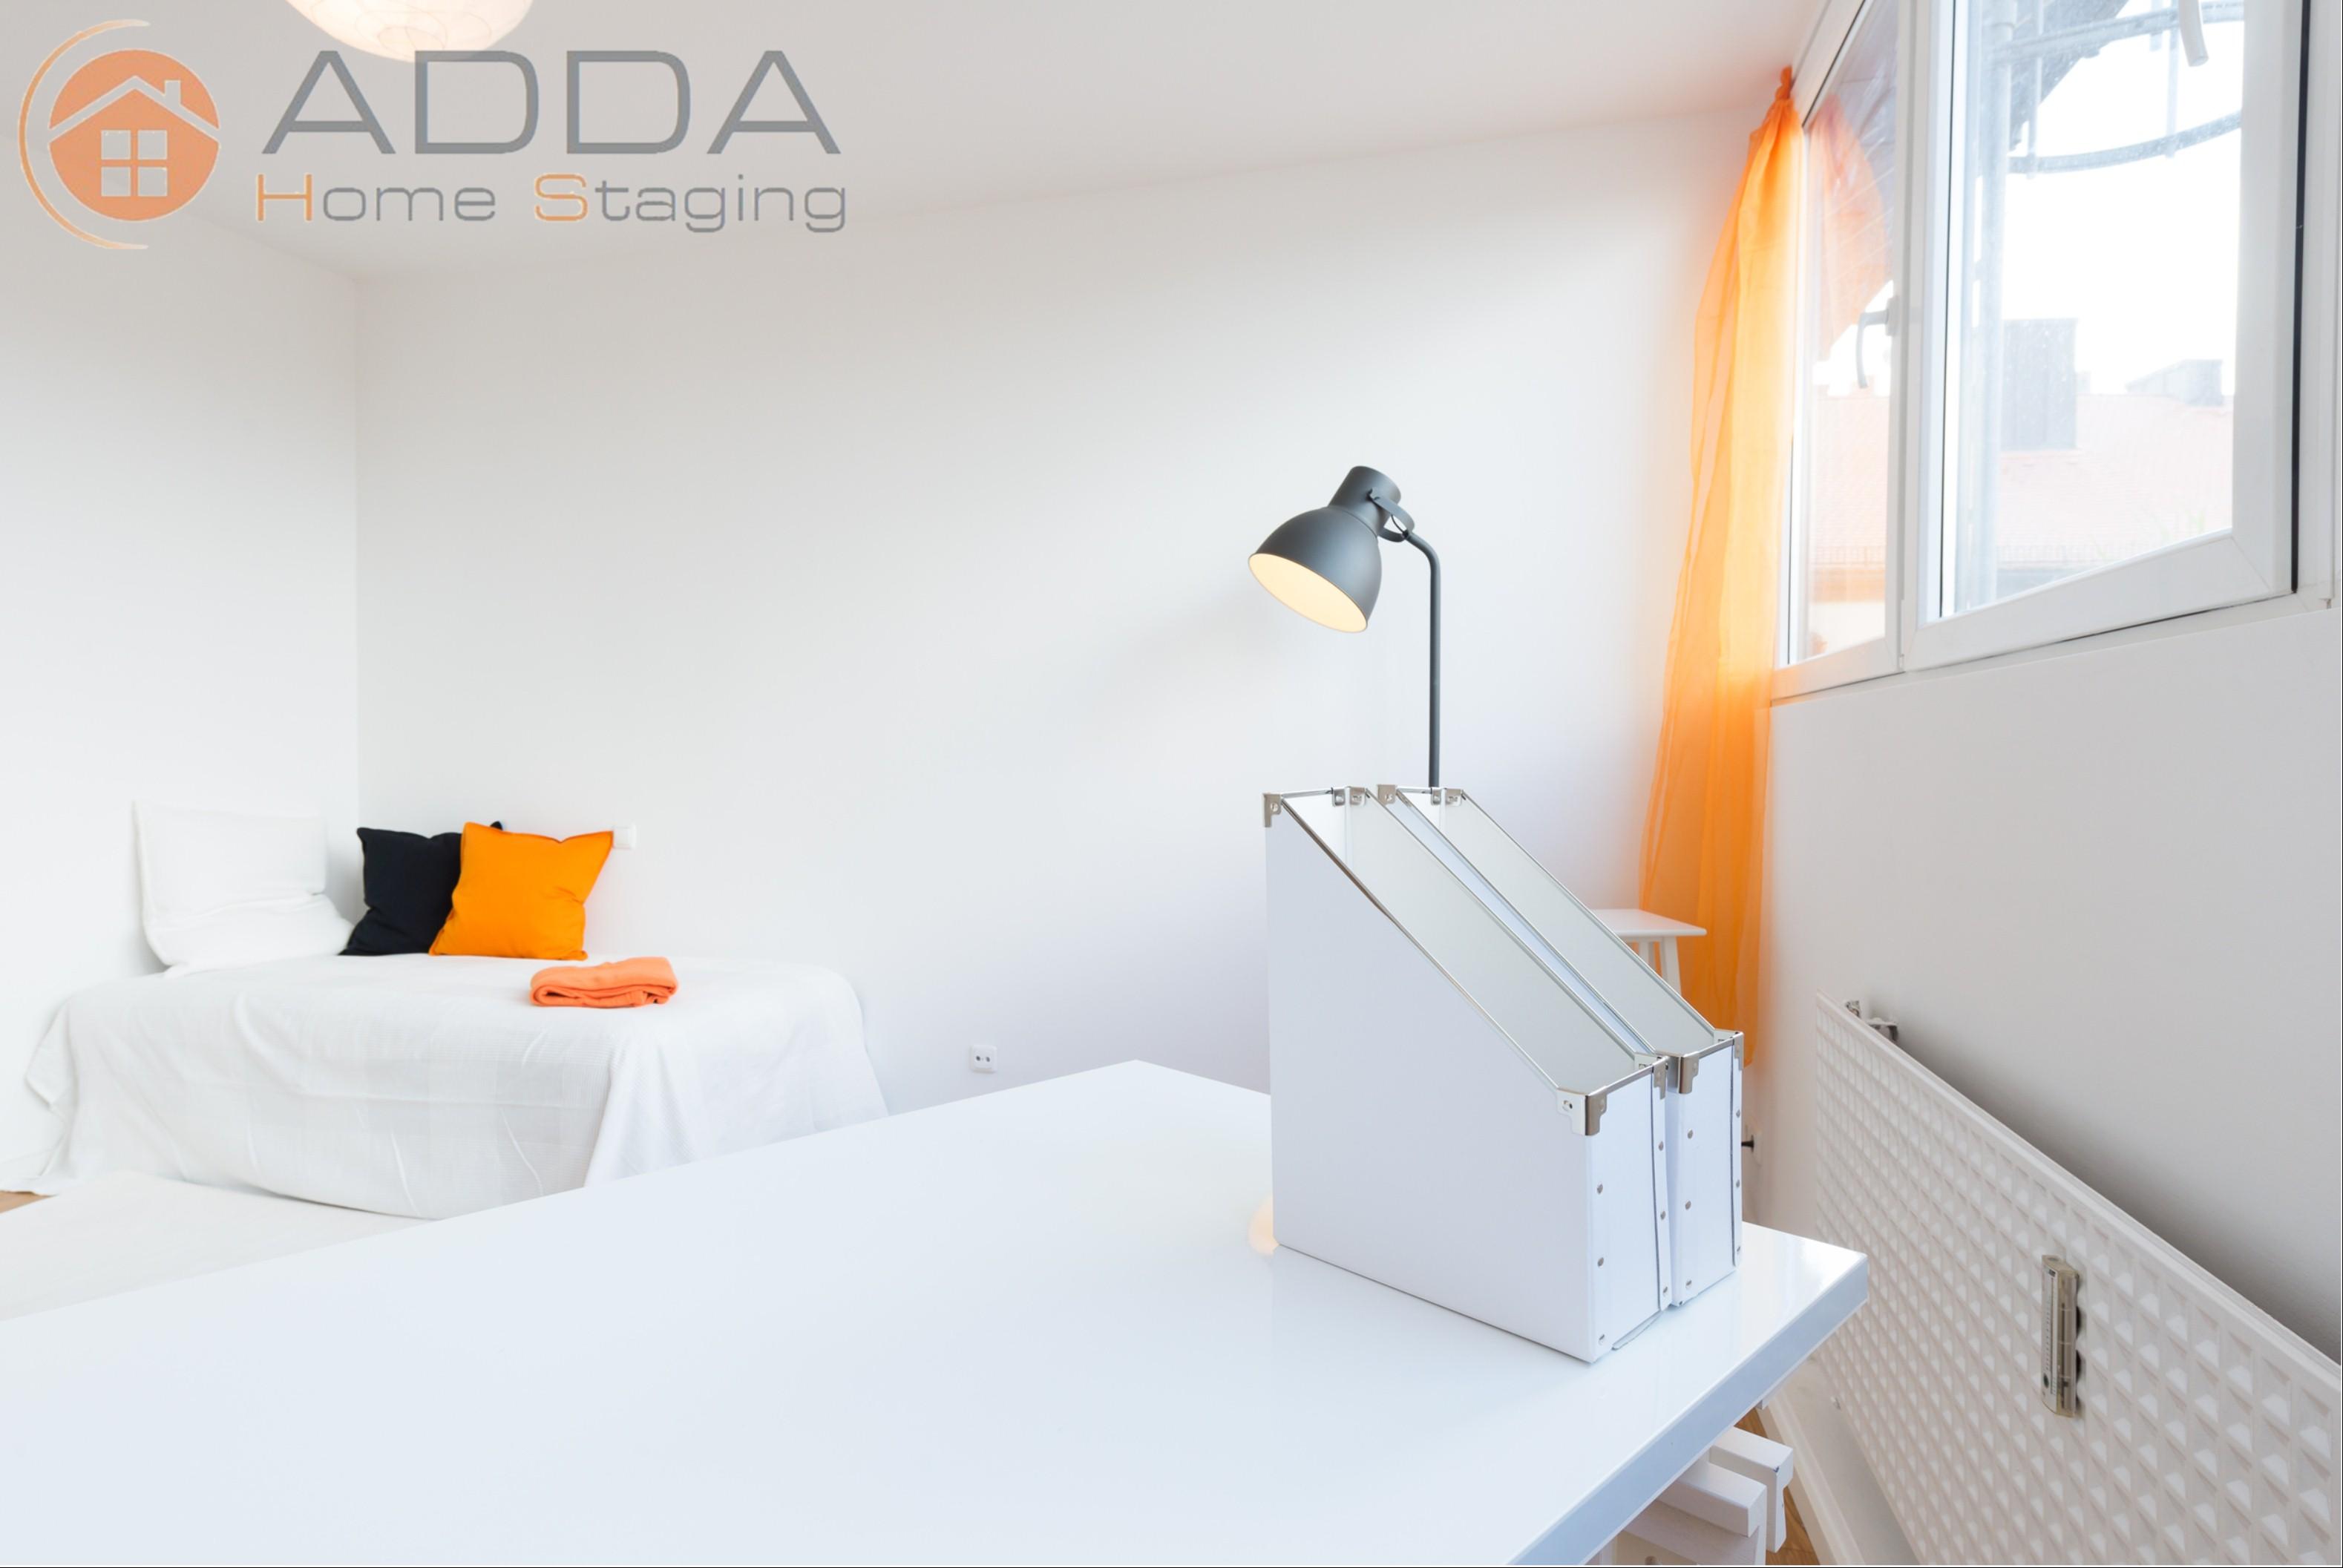 Büro / Zimmer nach dem Home Staging #schreibtisch ©ADDA Home Staging